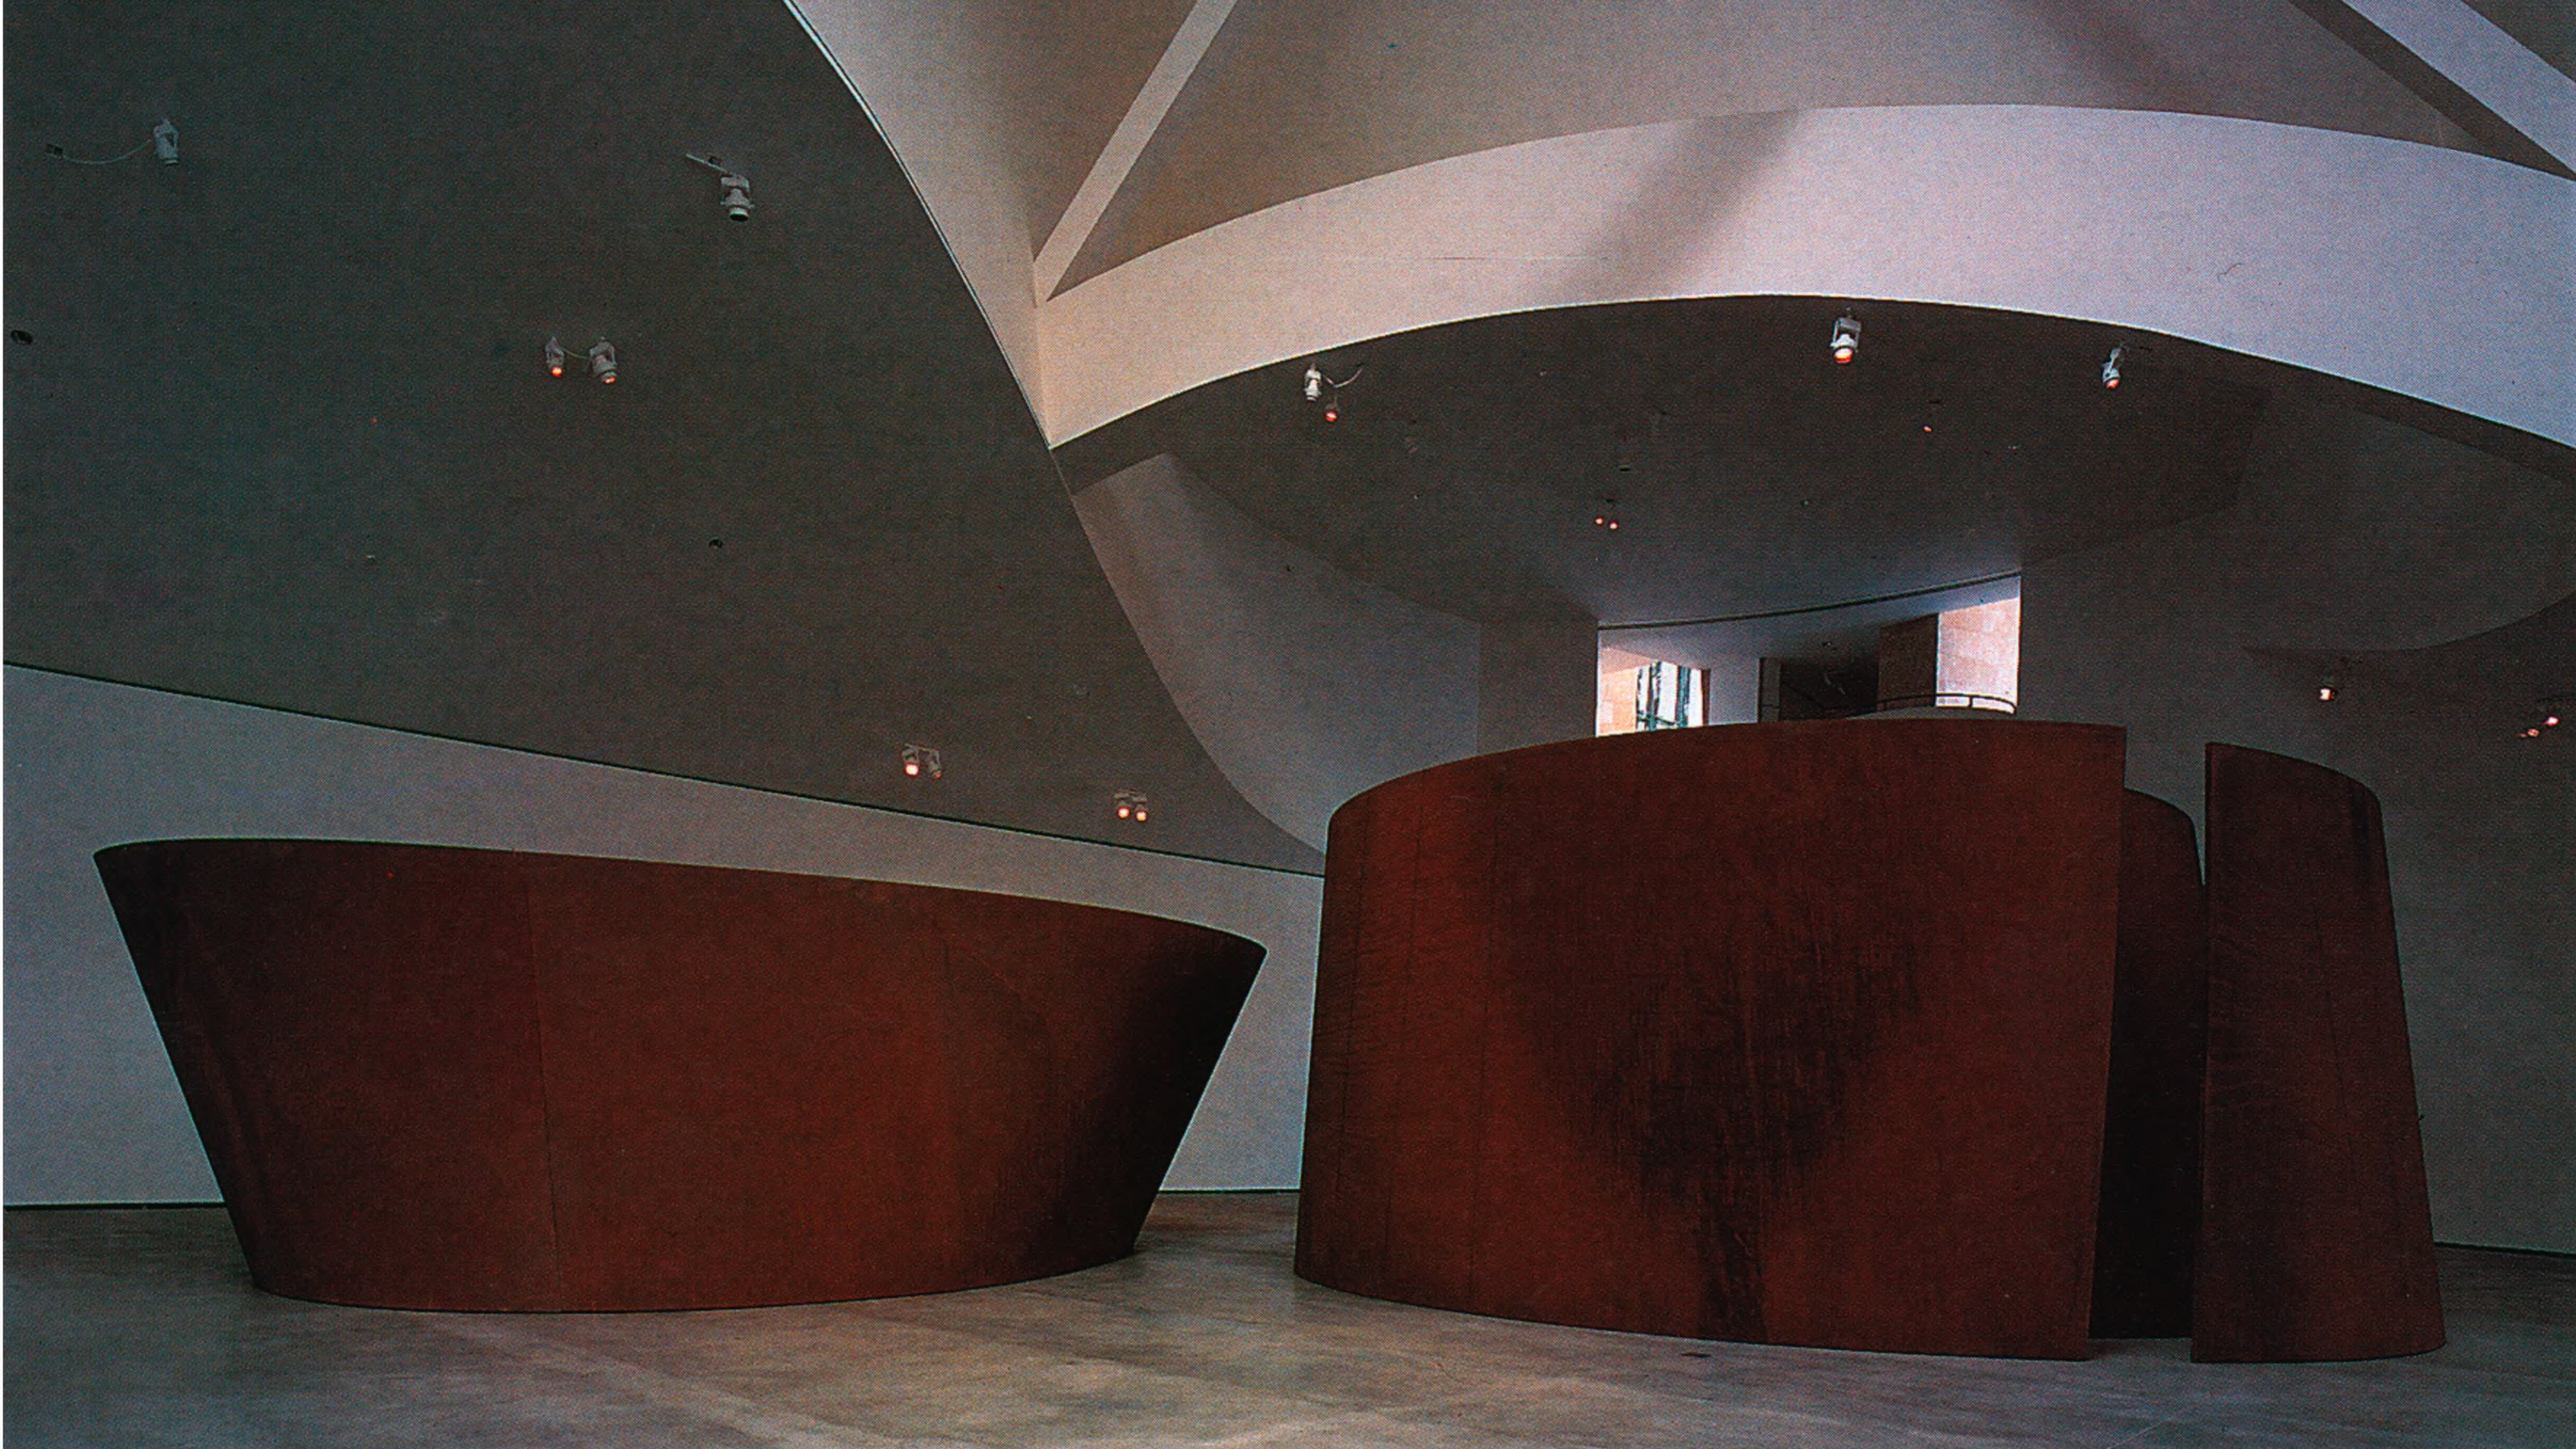 Serra at the Guggenheim